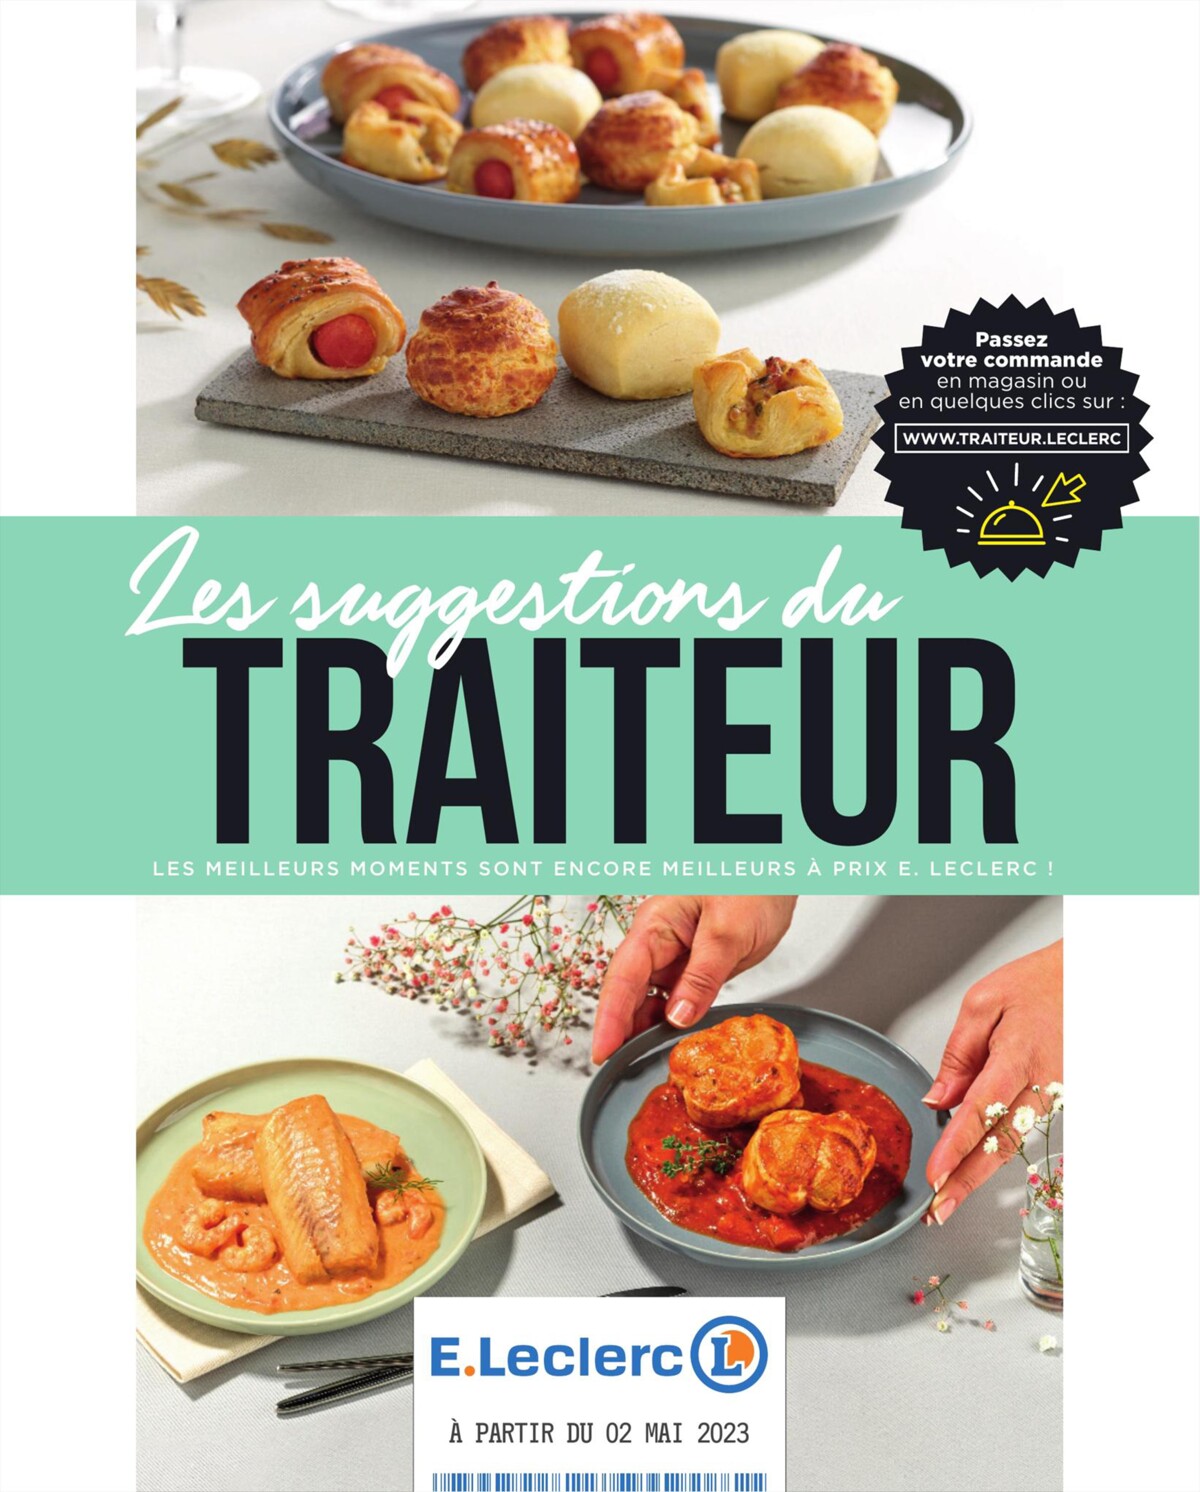 Catalogue Les suggestions du TRAITEUR, page 00001